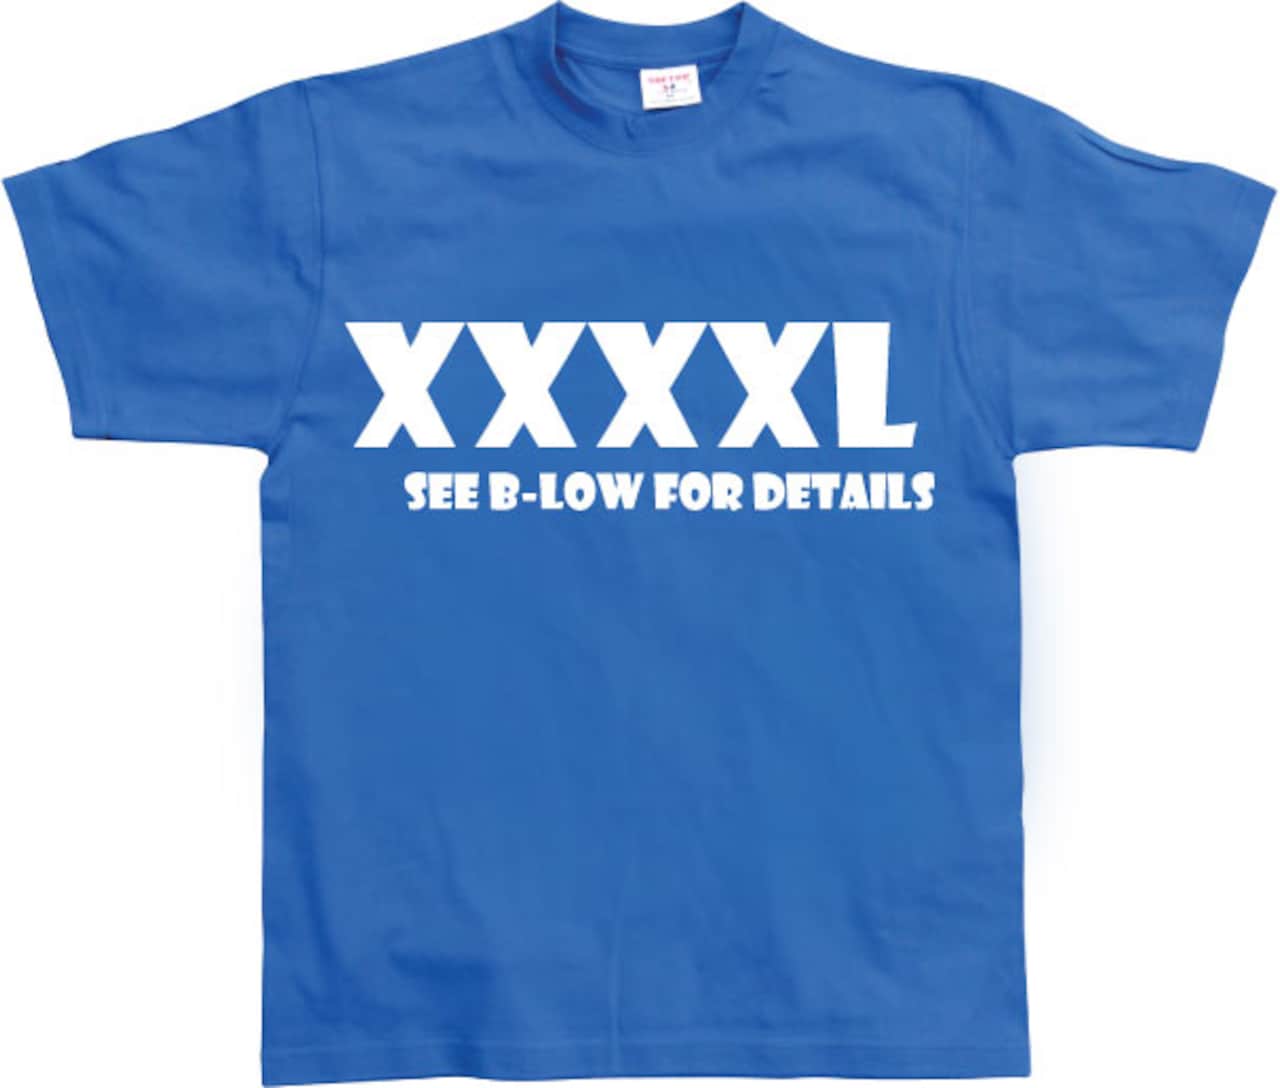 Xxxxl Shirtstore